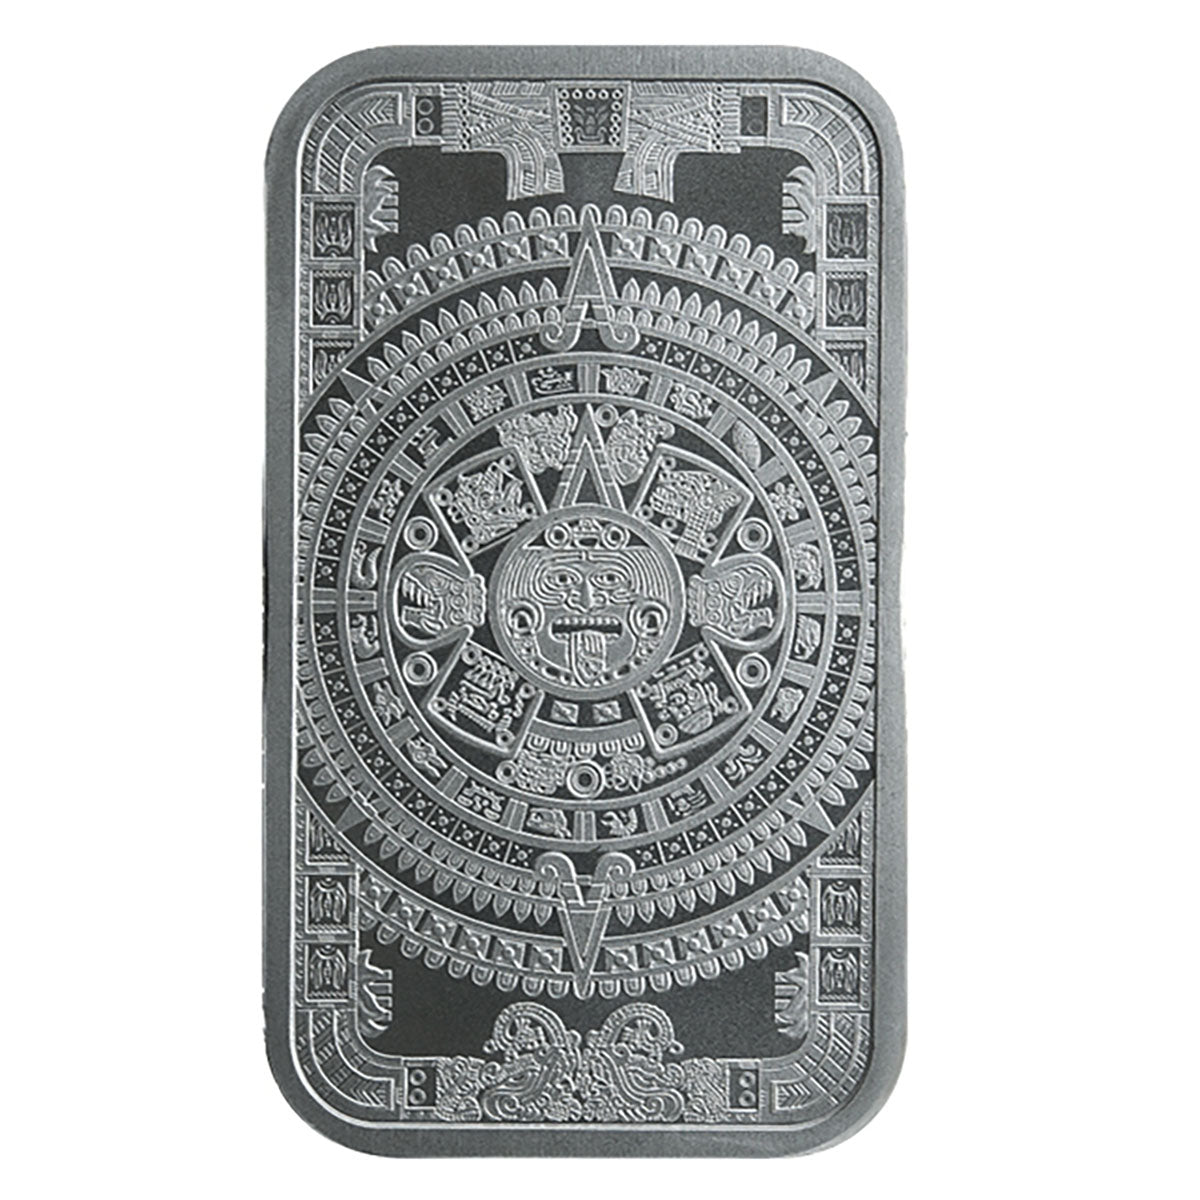 Aztec Calendar 1 oz Silver Bar